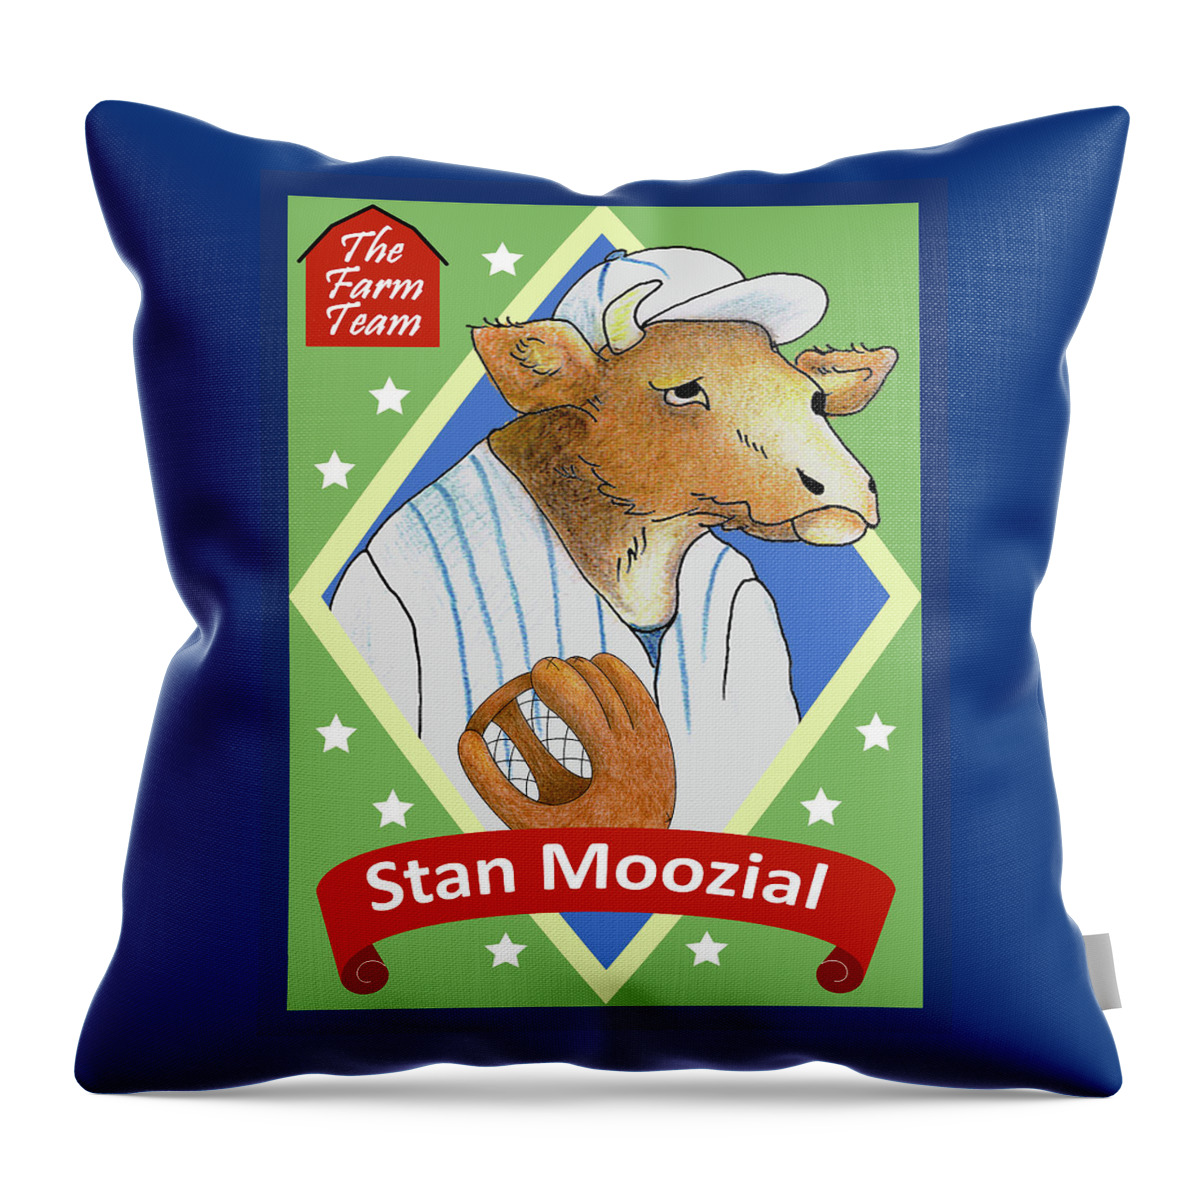 Baseball Throw Pillow featuring the digital art The Farm Team - Stan Moozial by Alison Stein